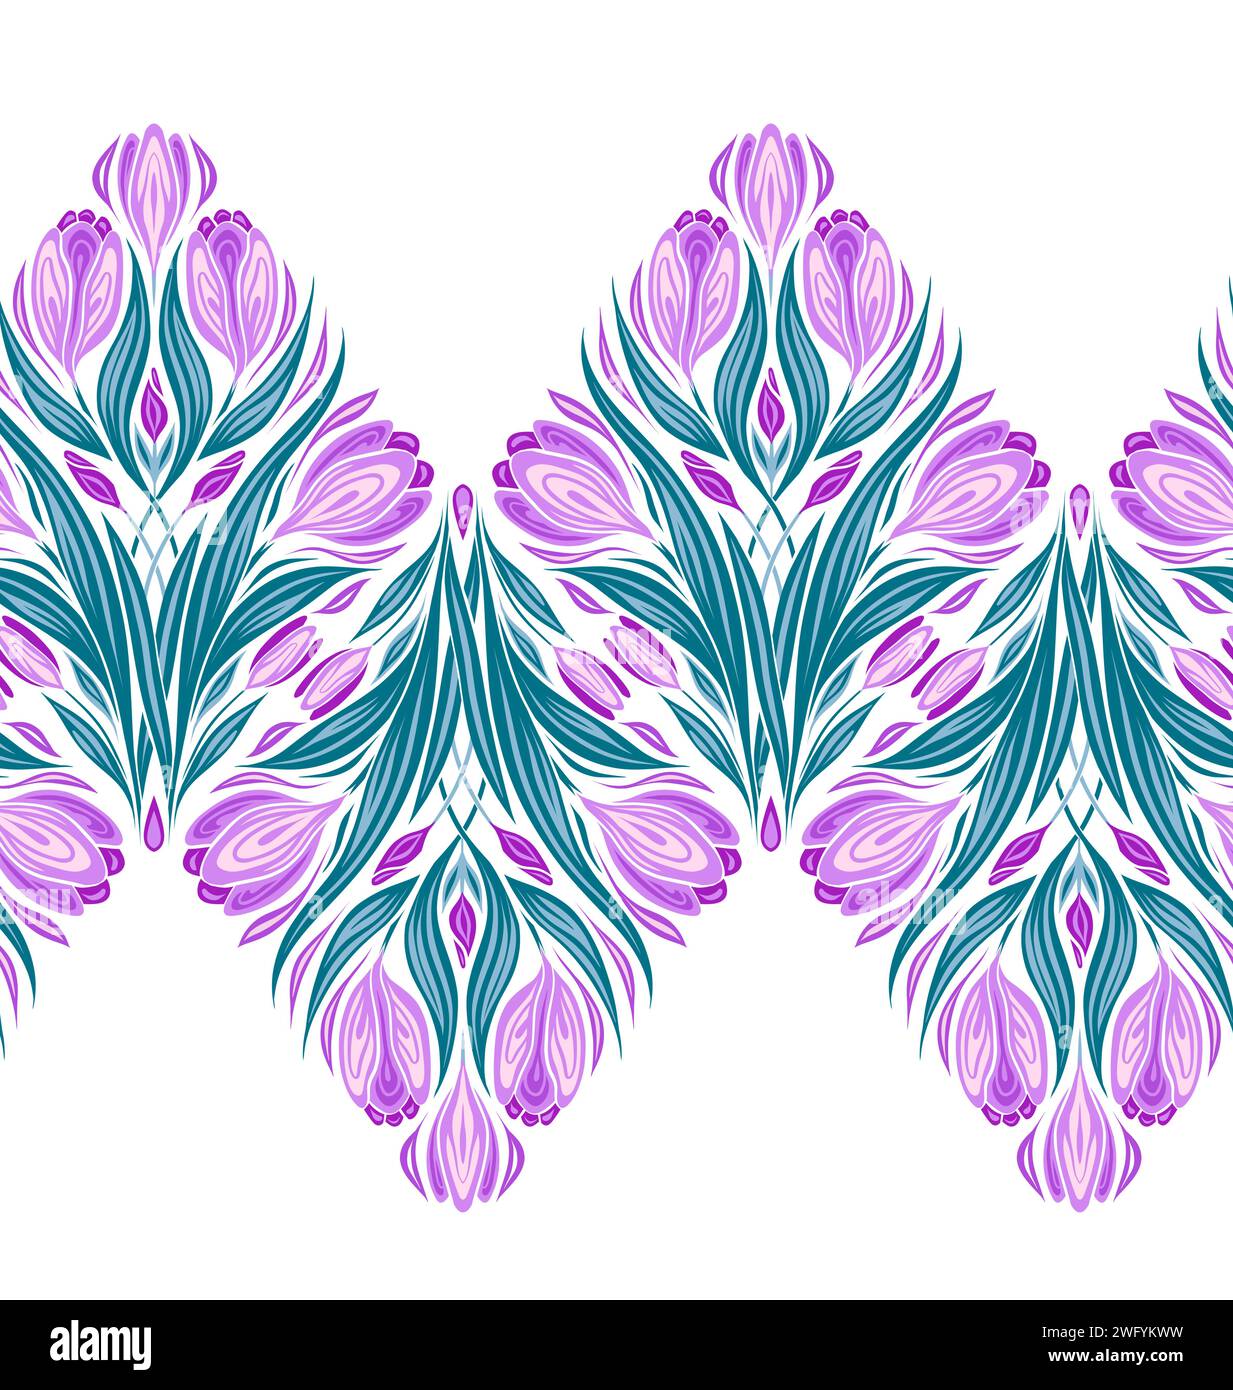 Bordure transparente vectorielle avec crocus géométriques. Frise horizontale avec des fleurs printanières décoratives isolées du fond. Texture Illustration de Vecteur